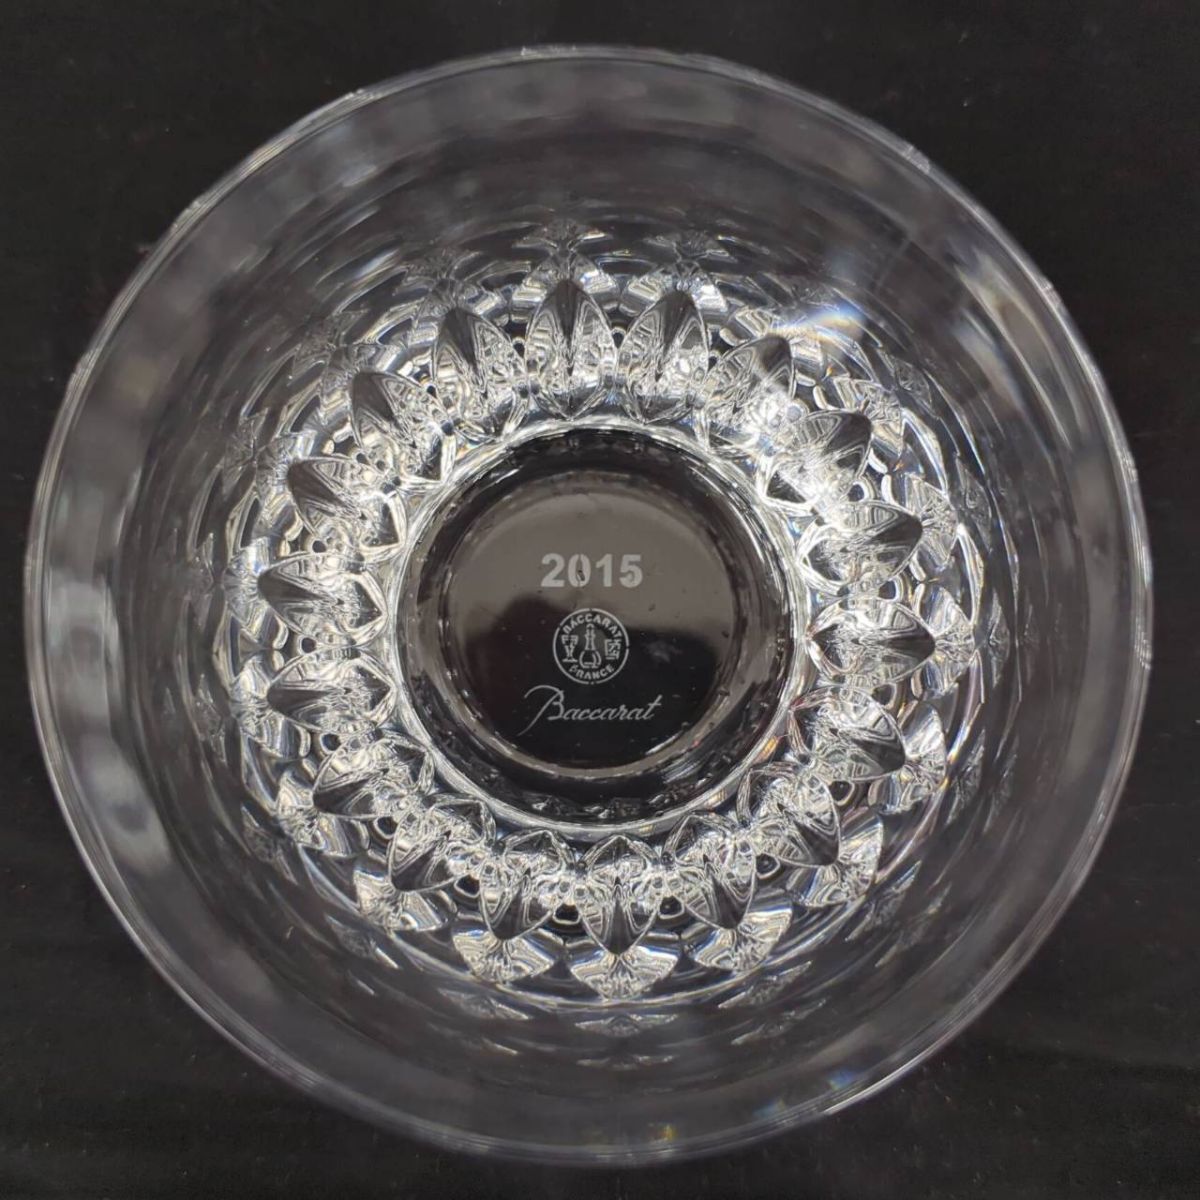 S330-H11-1883 Baccarat バカラ ローザ ペアロックグラス 2015年限定 箱有 食器 口径約9.7cm 高さ約8.5cm_画像5